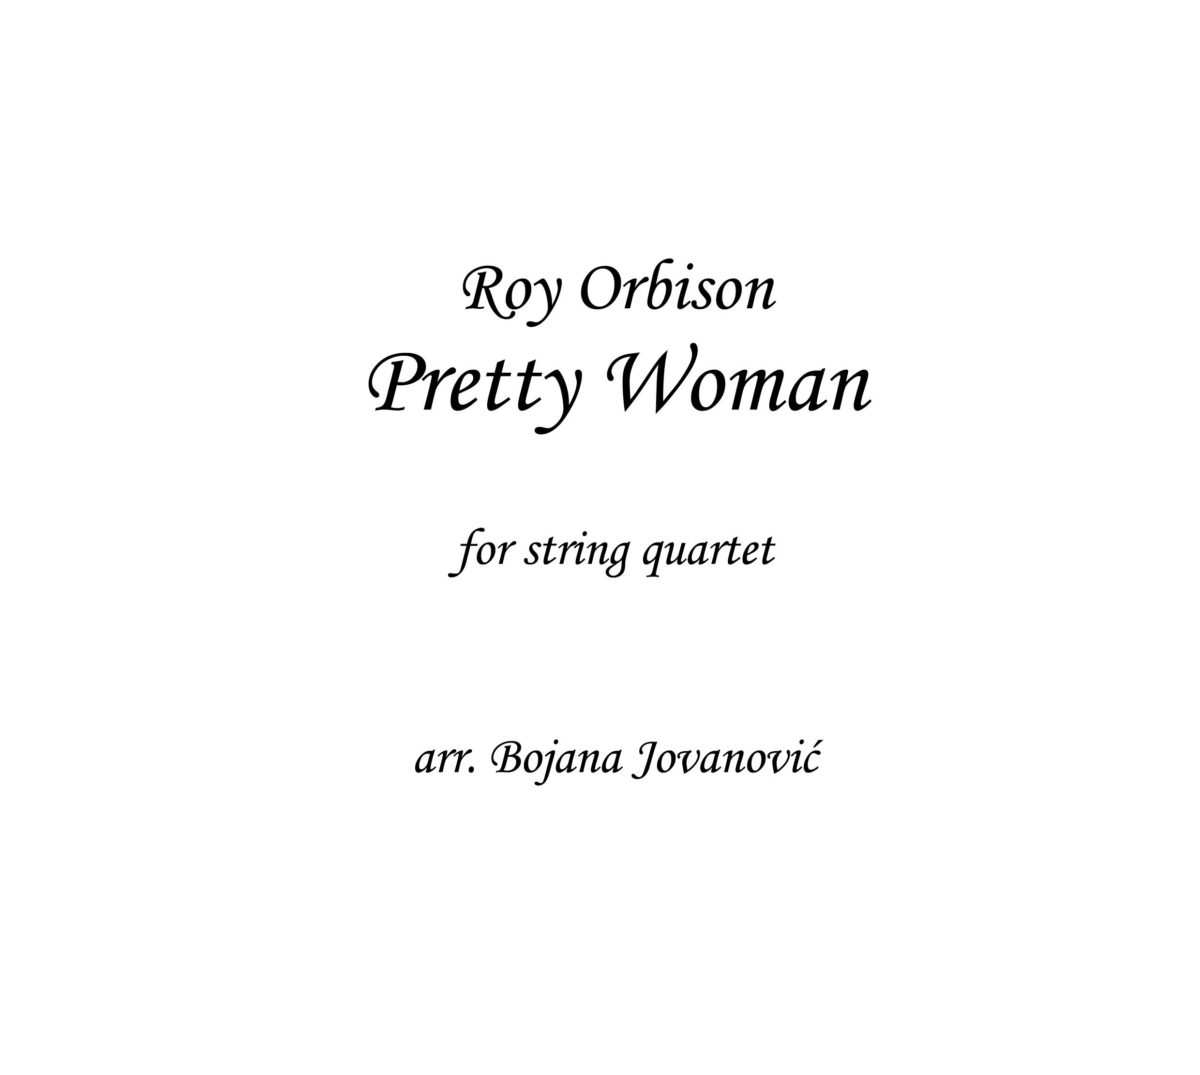 Pretty Woman (Roy Orbison) - Sheet Music